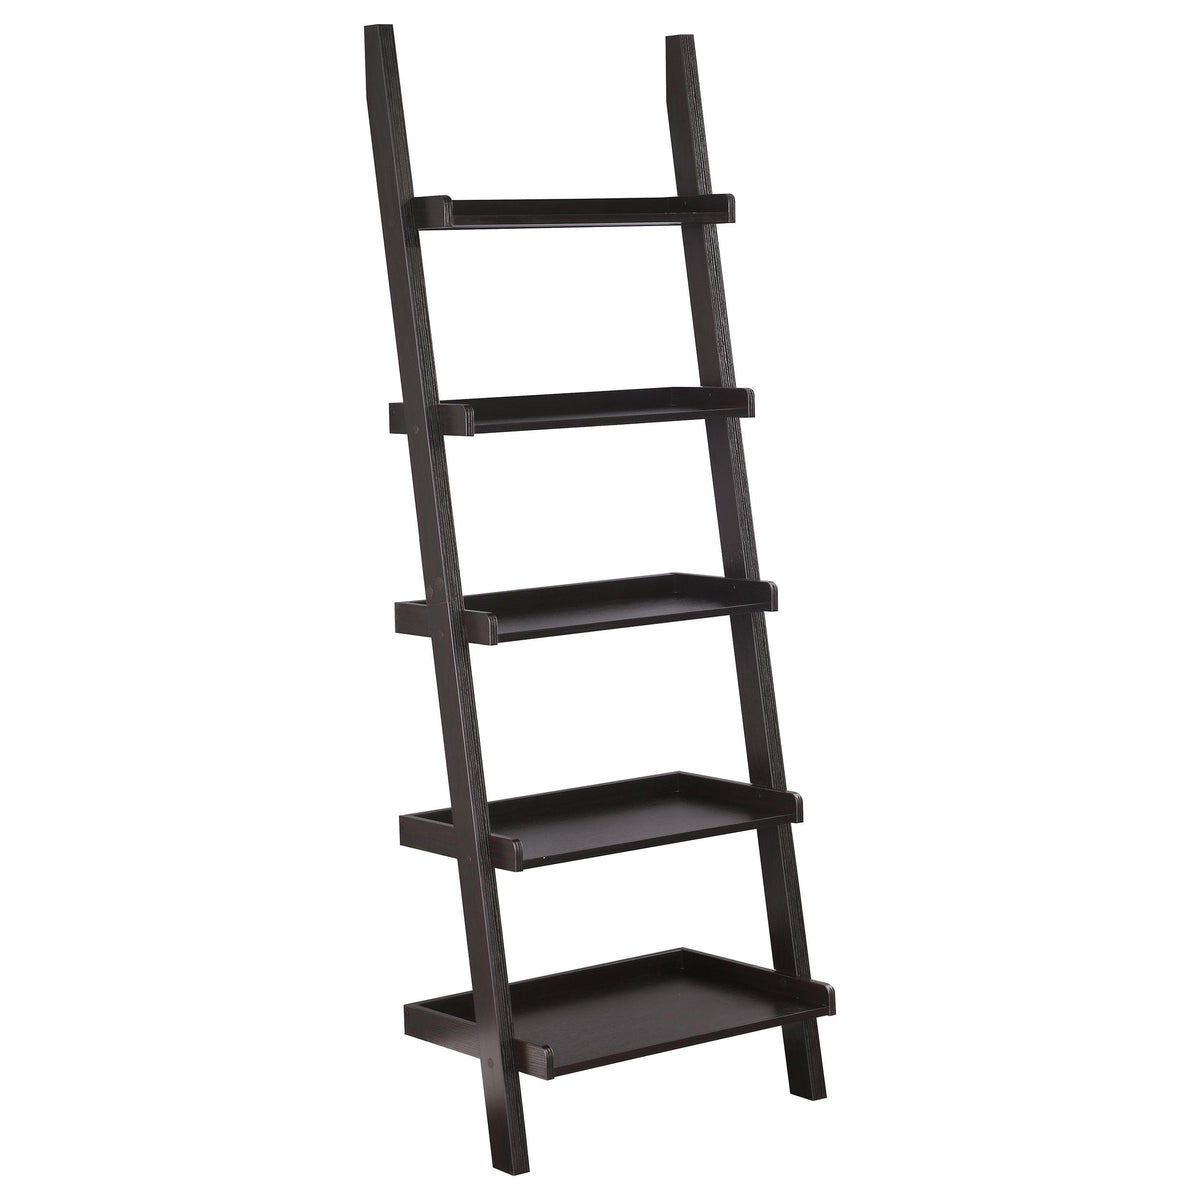 Colella 5-shelf Ladder Bookcase Cappuccino Colella 5-shelf Ladder Bookcase Cappuccino Half Price Furniture